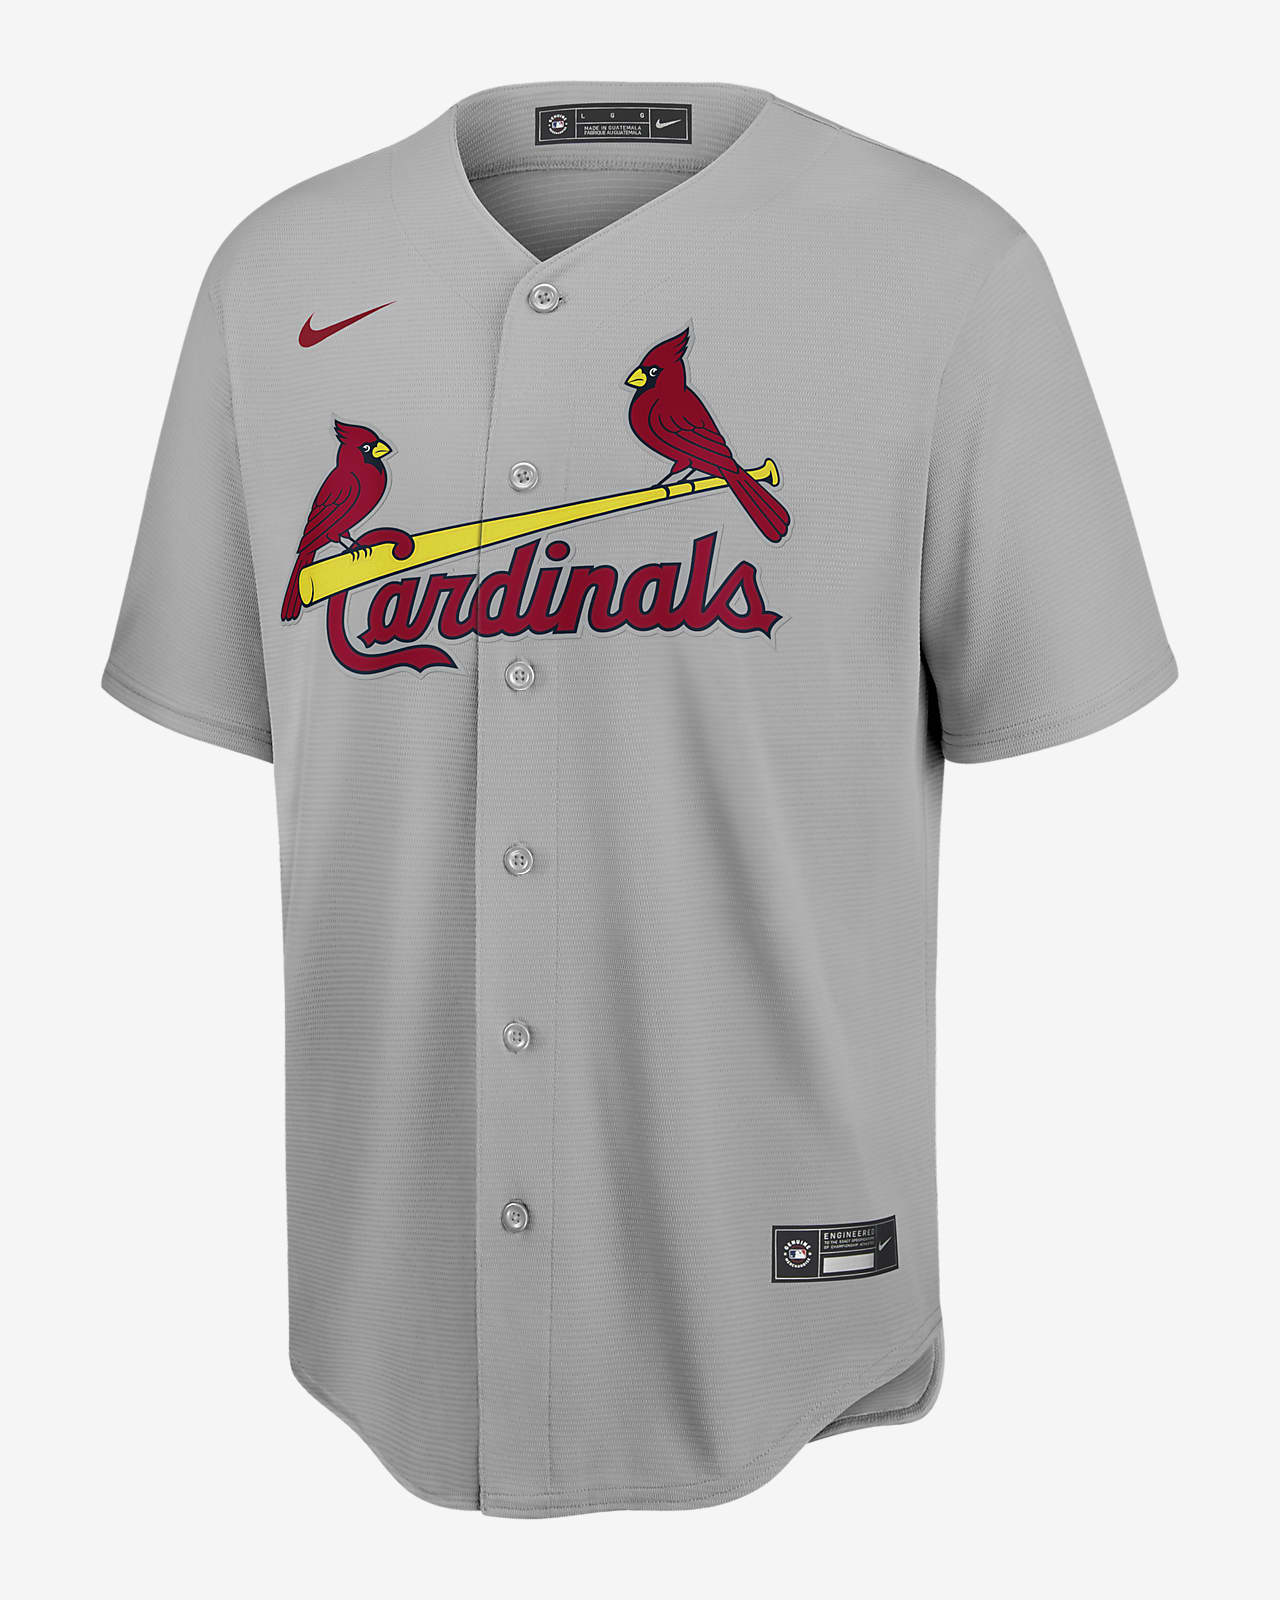 st louis cardinals home jersey color